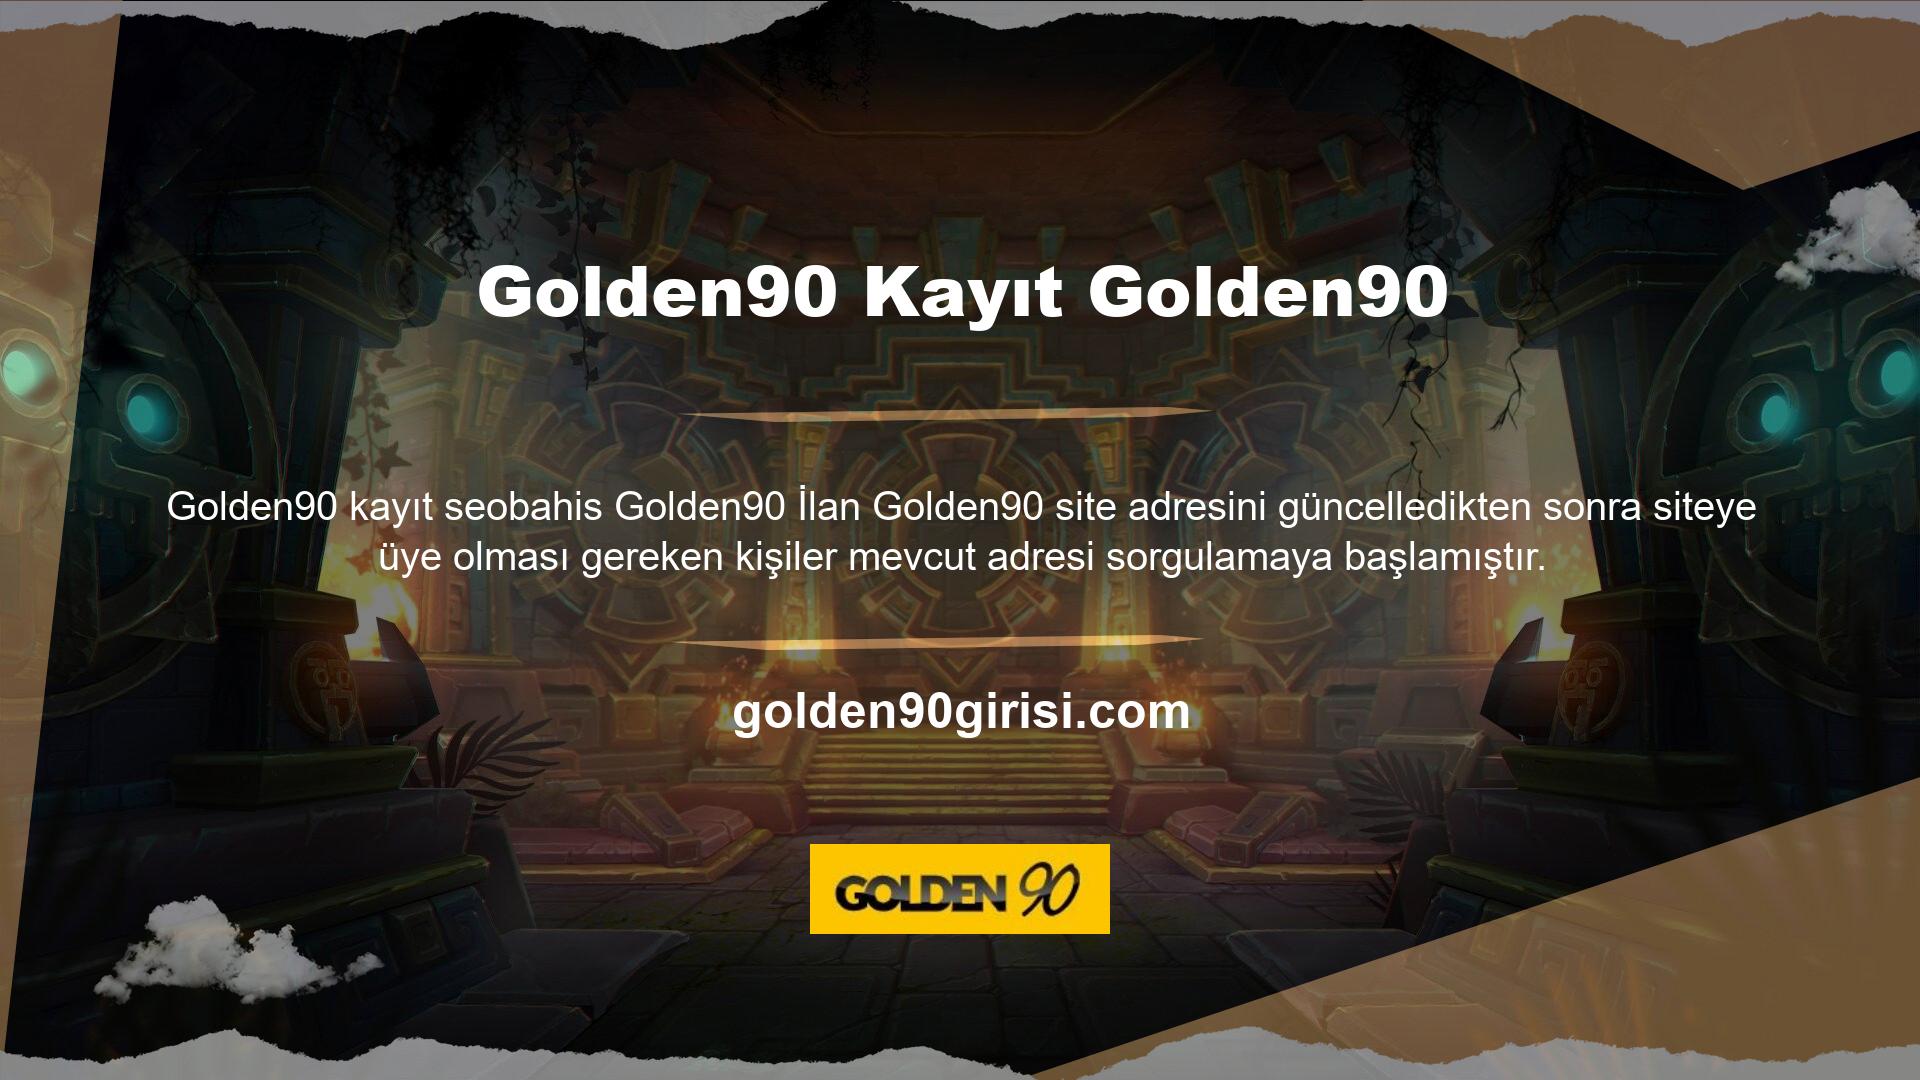 Golden90, üyelerin merakını gidermek için güncel adresleri internet tarayıcıları ve sosyal medya aracılığıyla paylaşmaya ve güvenli bir şekilde dağıtmaya devam ediyor